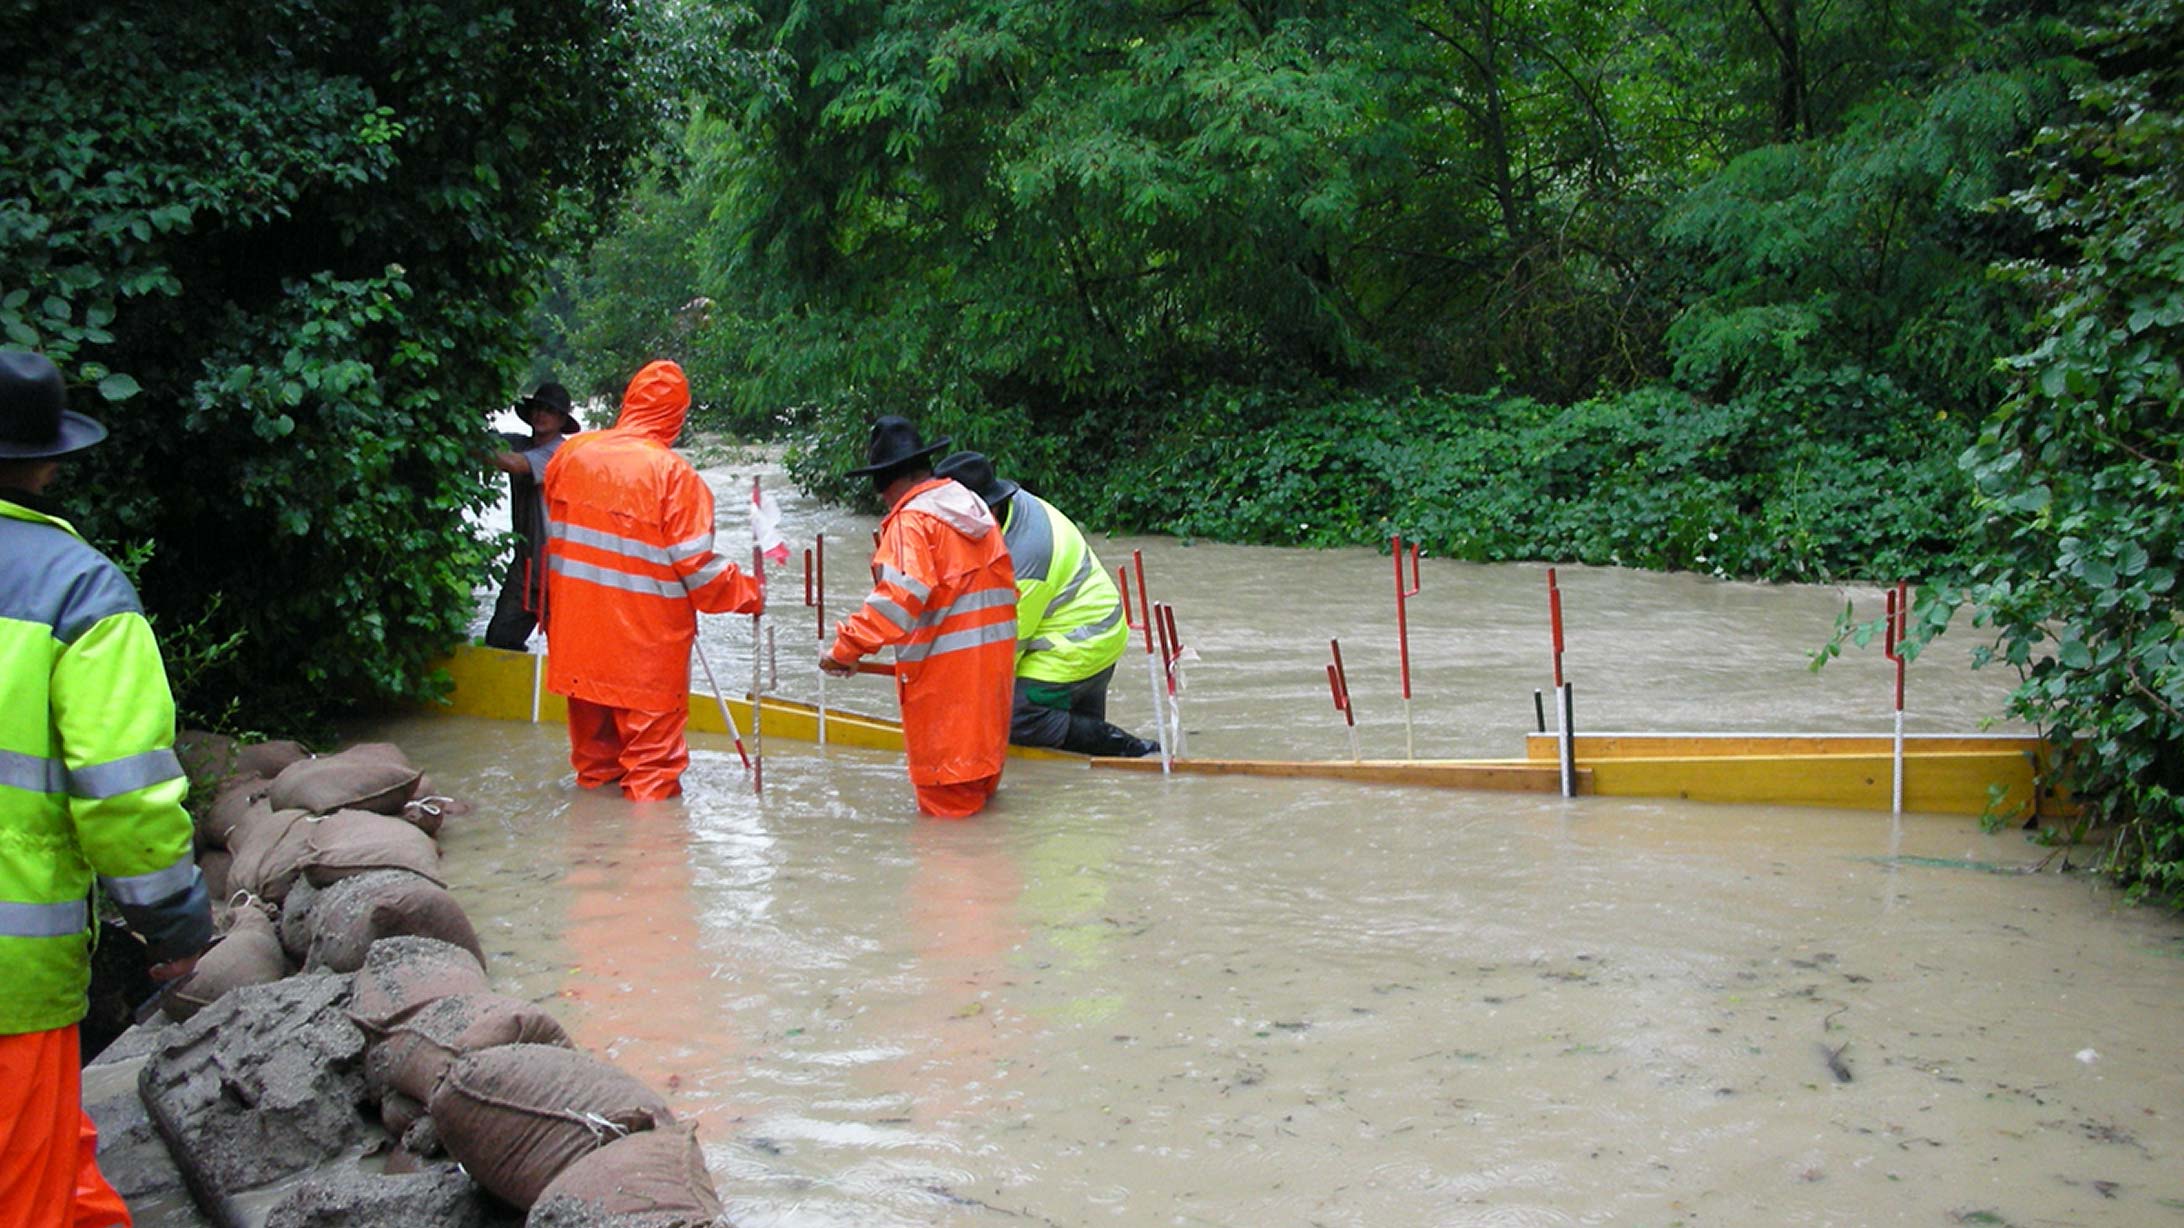 Eine gruppe Männer steht in einem überfluteten Fluss und baut eine Barriere auf